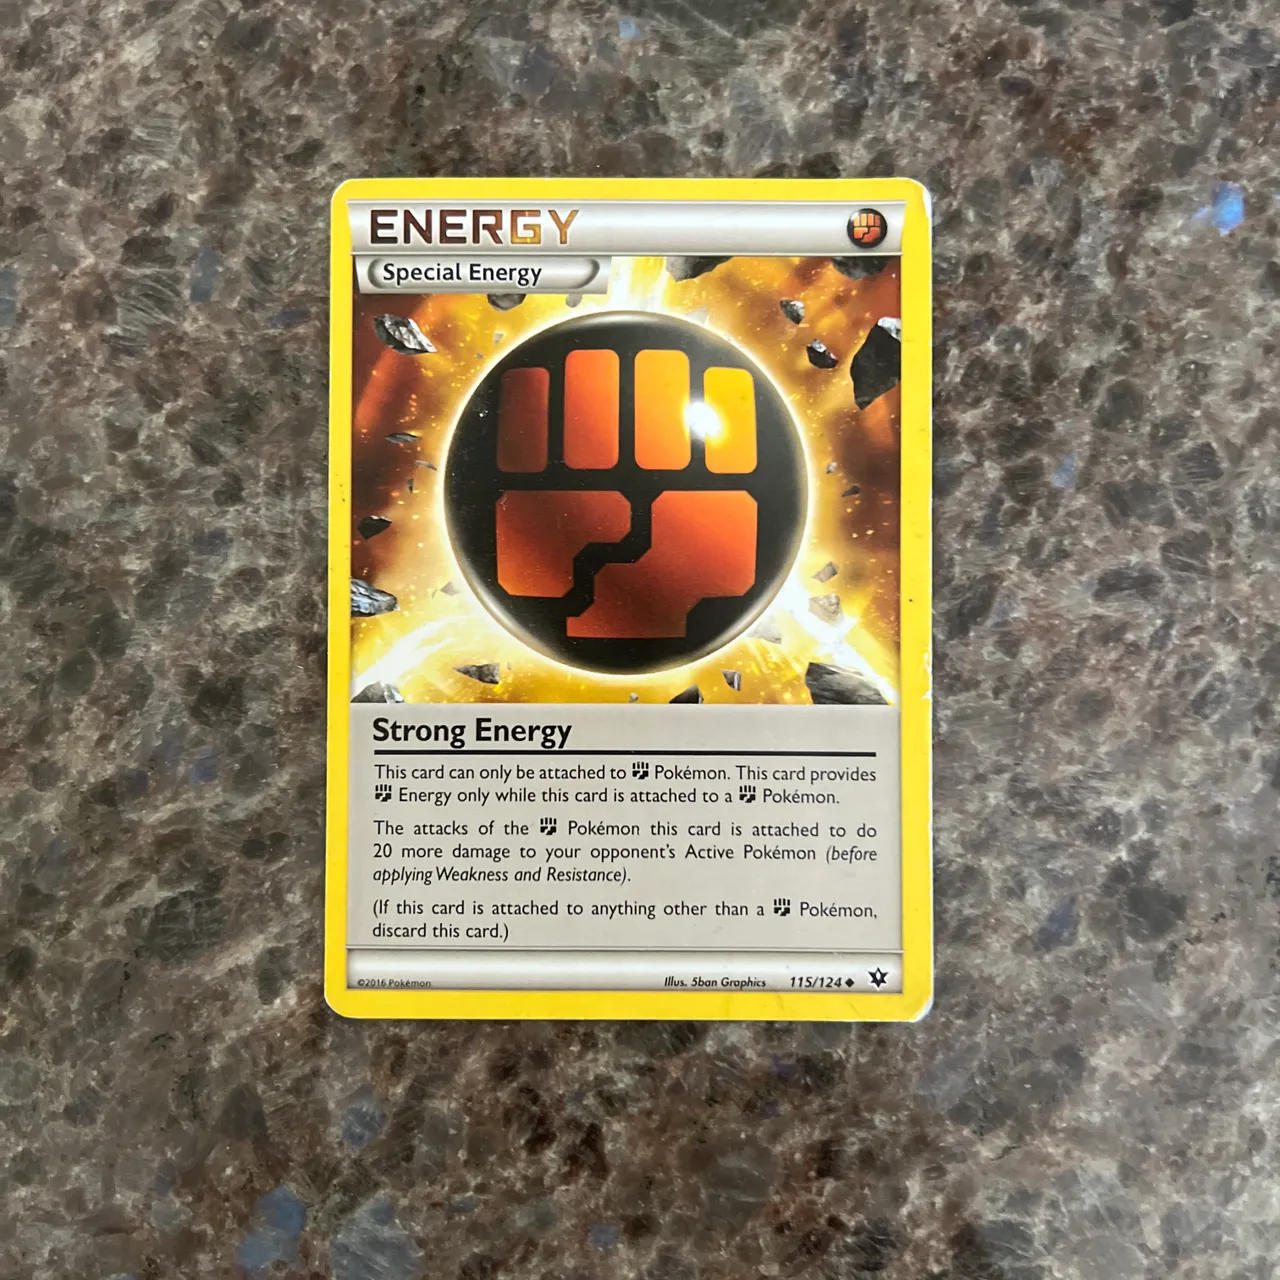 Pokémon energy card photo 1